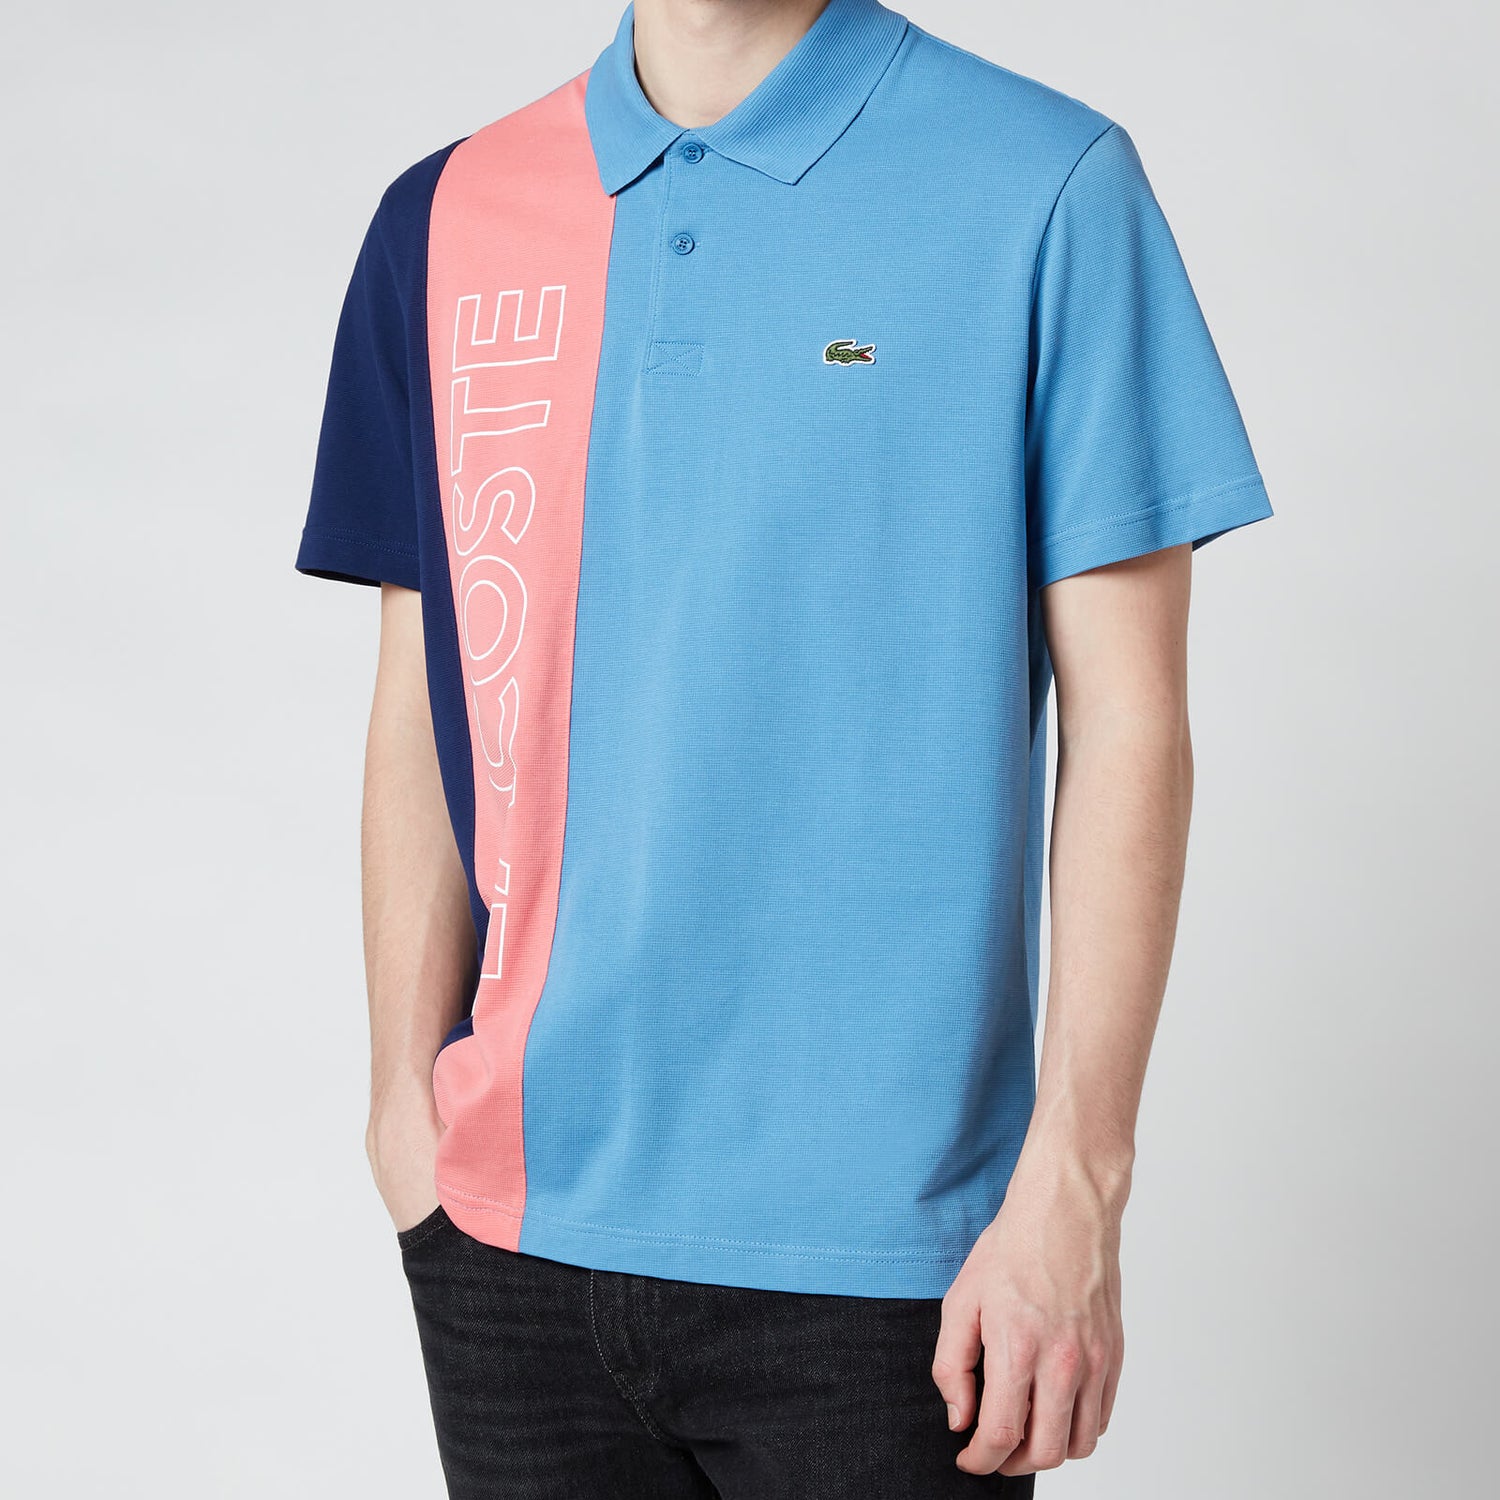 Lacoste Men's Vertical Colourblock Polo Shirt - Turquin Blue/Amaryllis